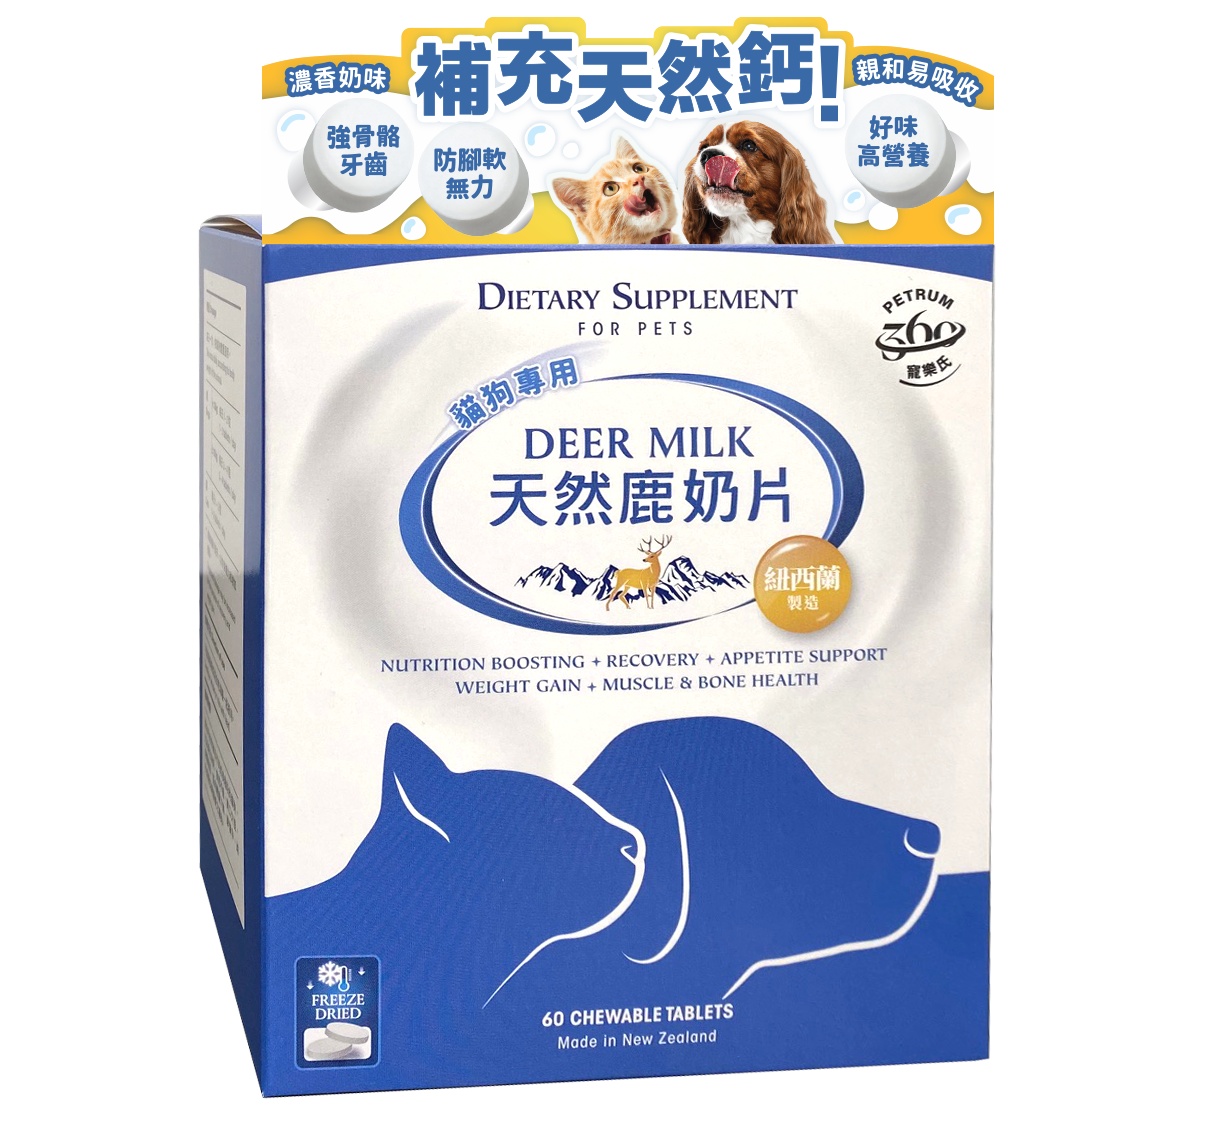 Petrum 360 - Dietary Supplement For Pets - Deer Milk 60